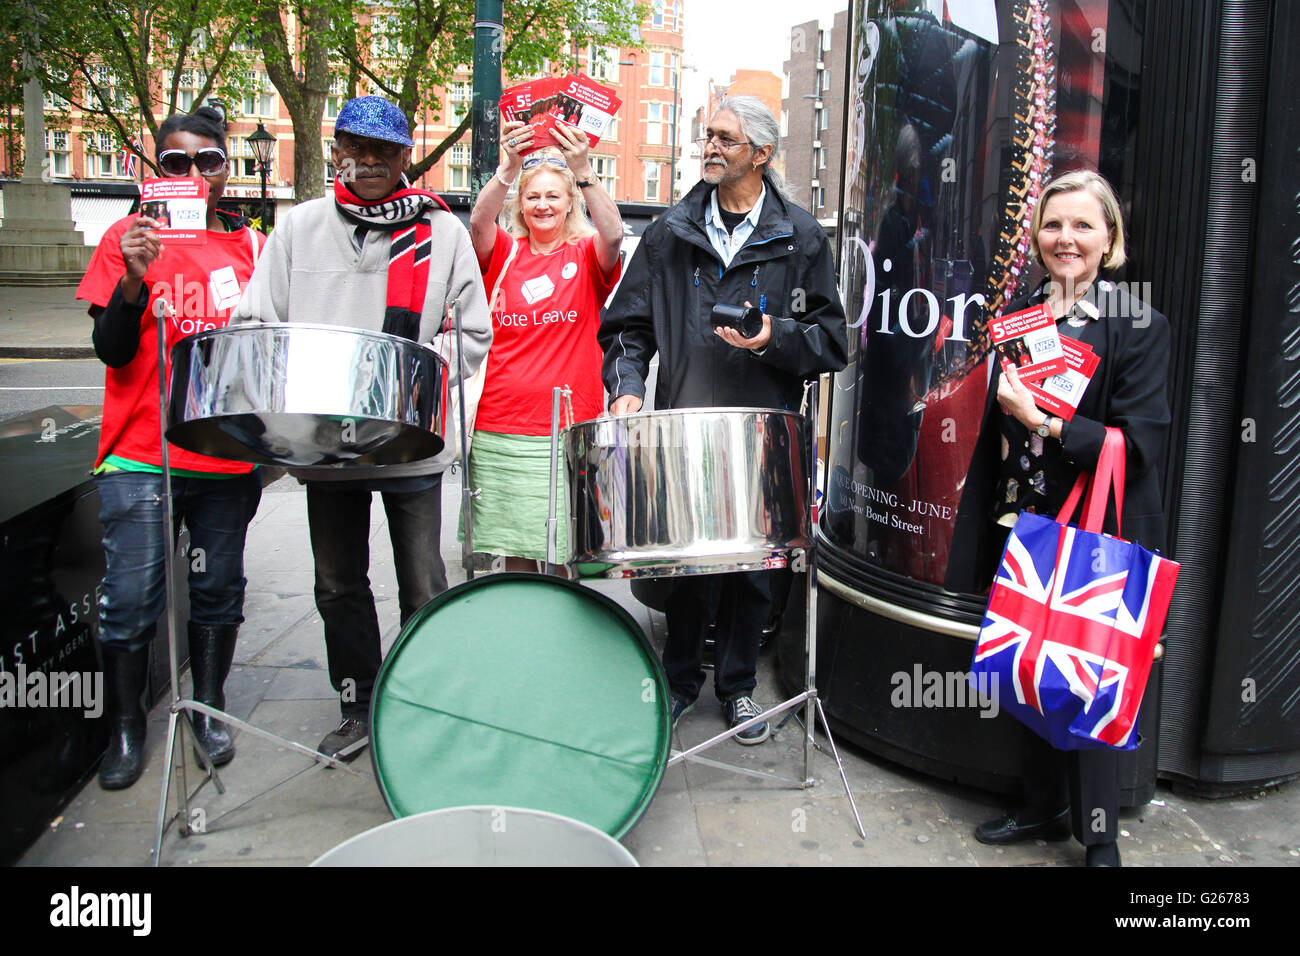 Sloane Square, London, Regno Unito 24 maggio 2016 - Votare per lasciare gli attivisti con nastro di acciaio al di fuori Sloane Square stazione della metropolitana. Credito: Dinendra Haria/Alamy Live News Foto Stock